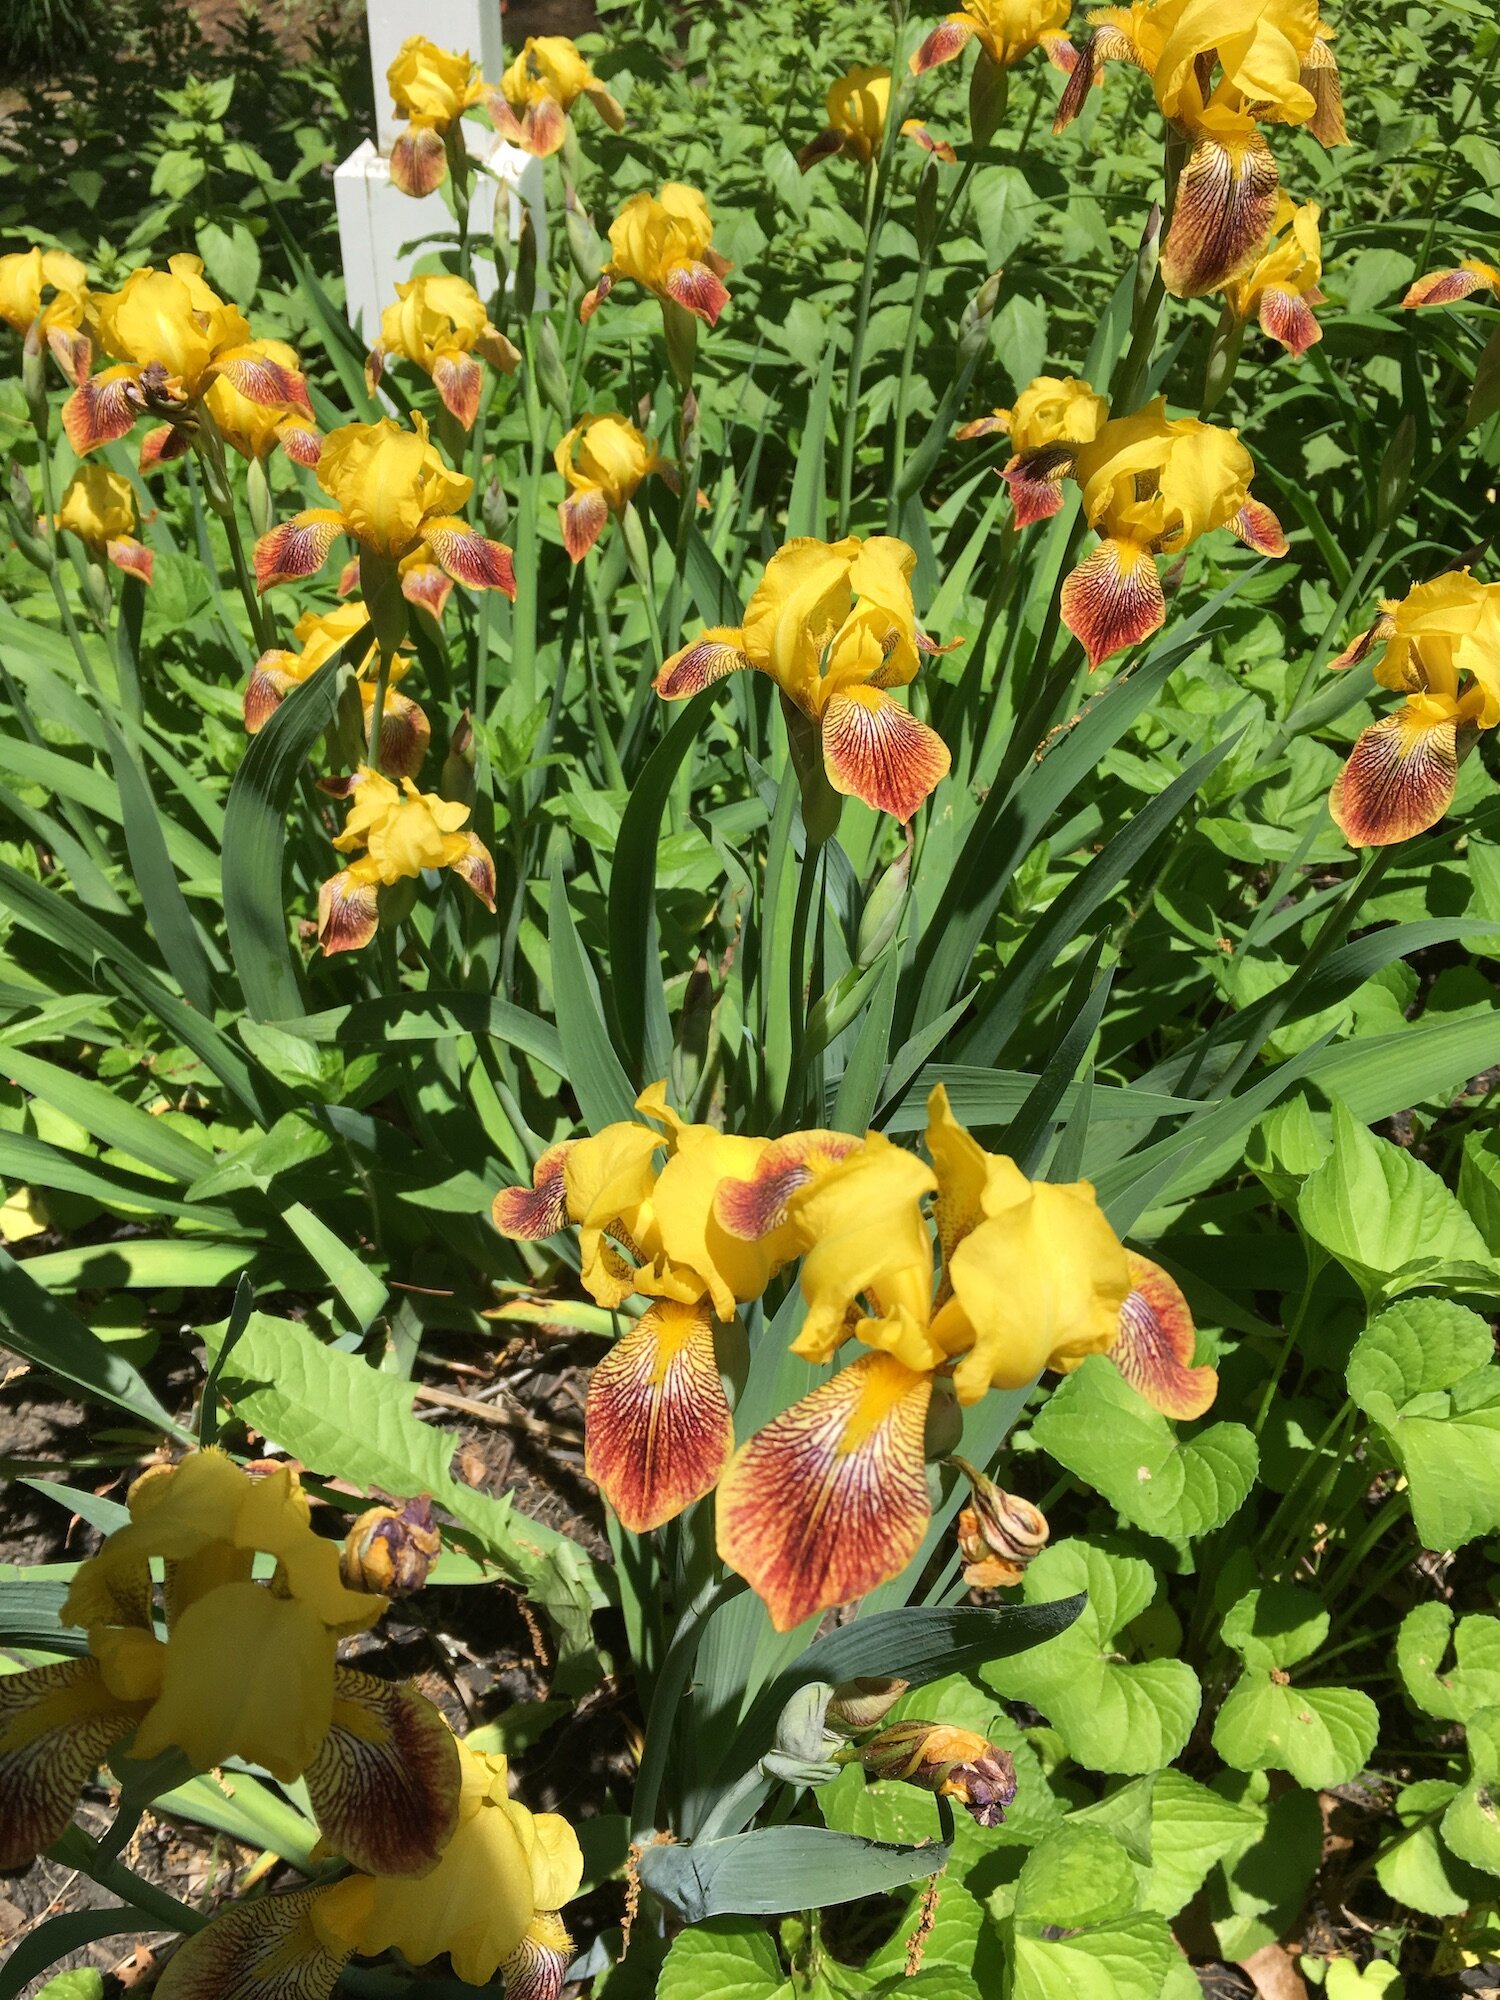 Yellow irises in garden.jpg